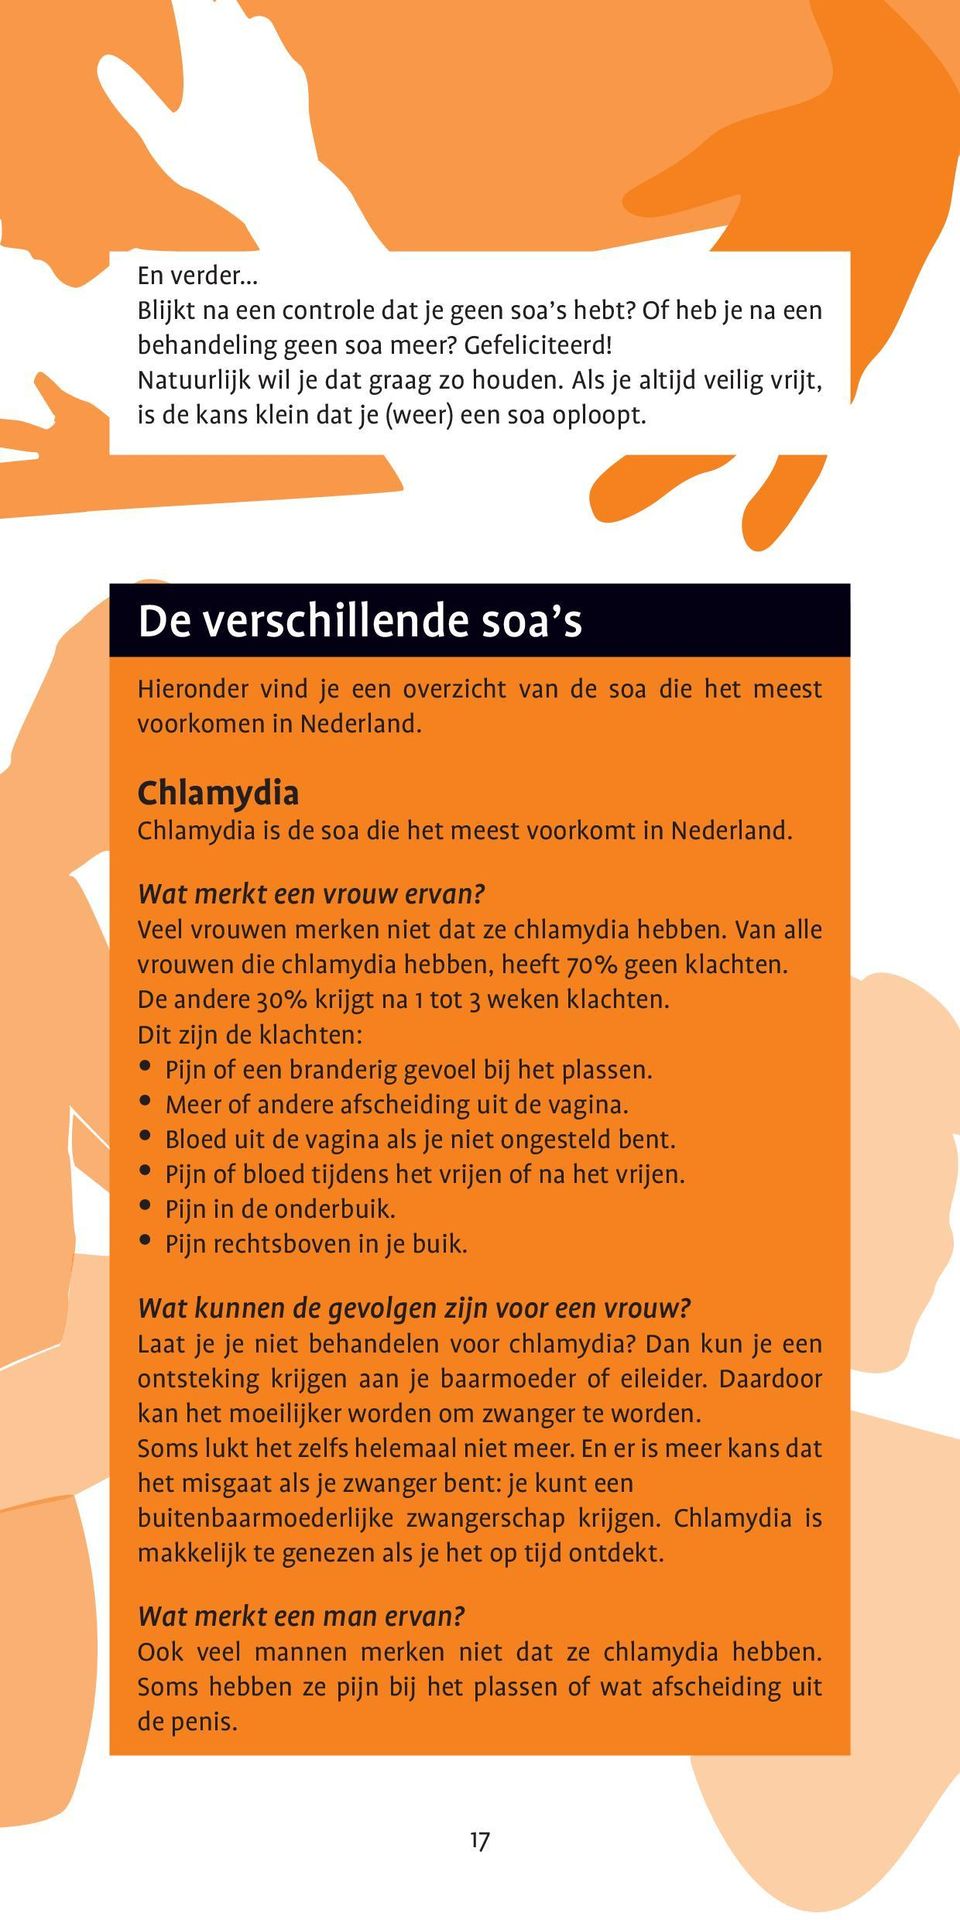 Chlamydia Chlamydia is de soa die het meest voorkomt in Nederland. Wat merkt een vrouw ervan? Veel vrouwen merken niet dat ze chlamydia hebben.